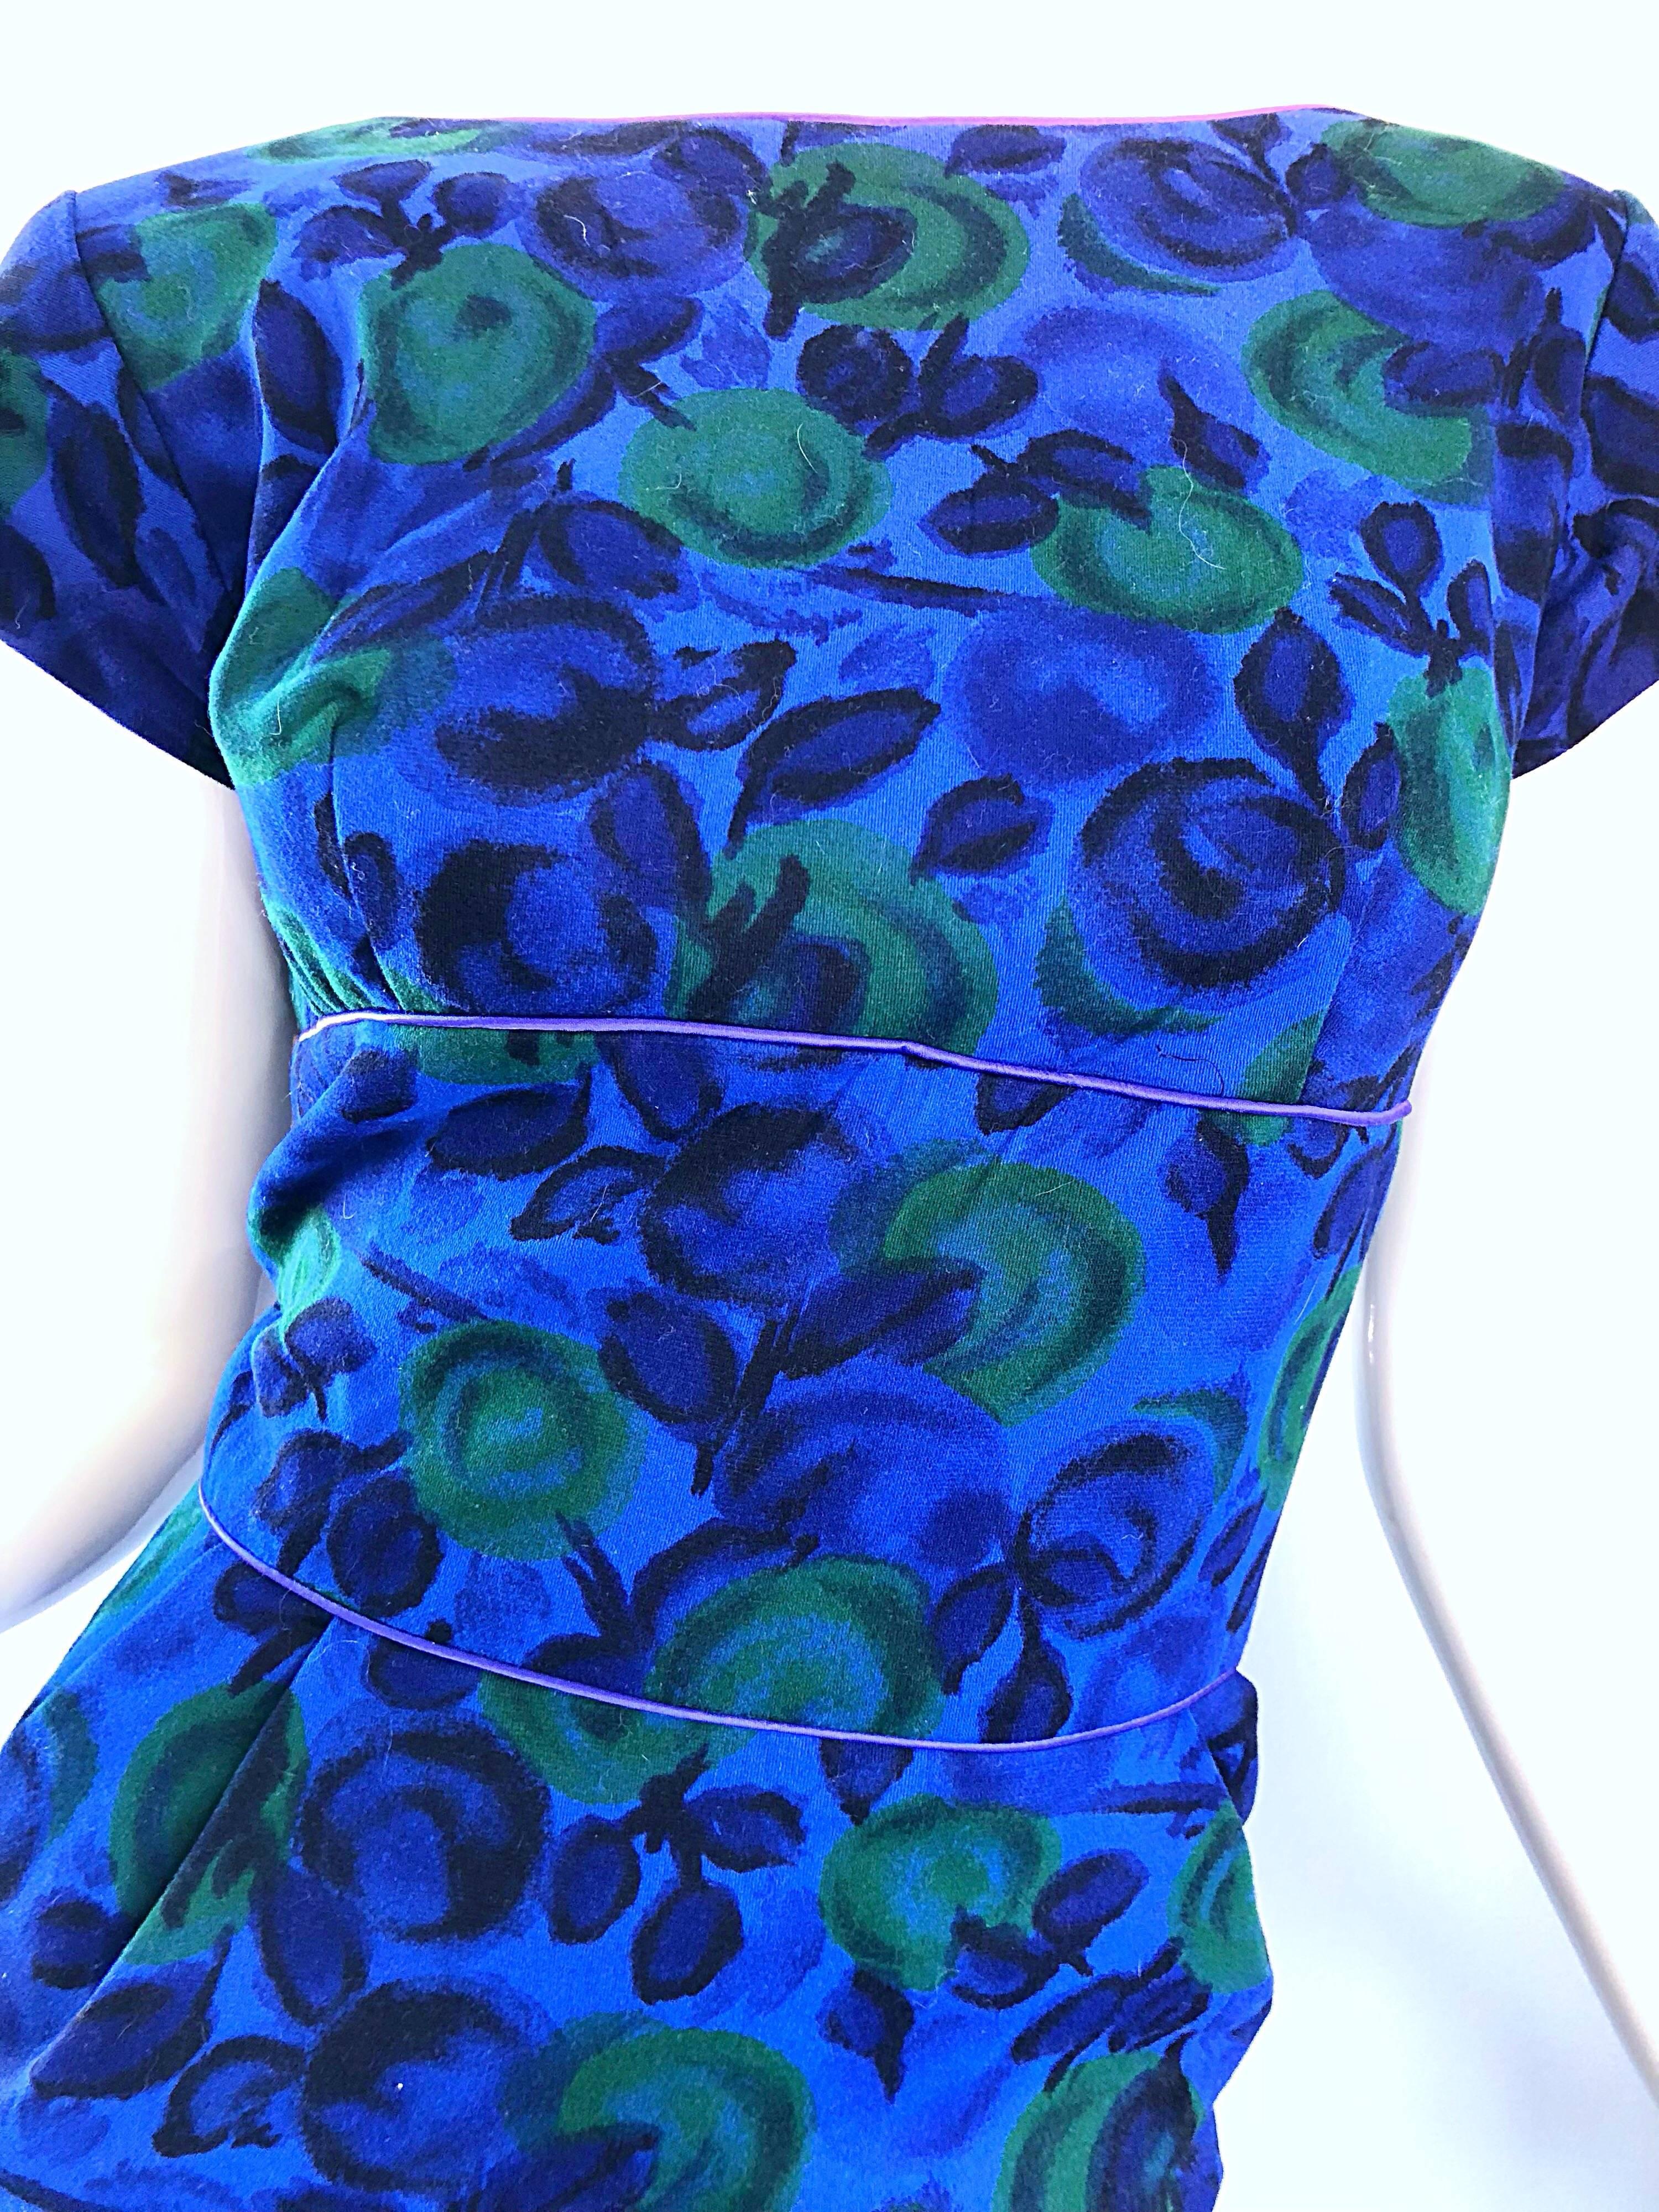 Magnifique robe en laine imprimée de fruits bleu royal et vert des années 1950 ! Fabuleuse coupe flatteuse qui s'étire pour épouser la forme du corps. Manches courtes à capuchon. Fermeture à glissière en métal sur toute la longueur du dos avec